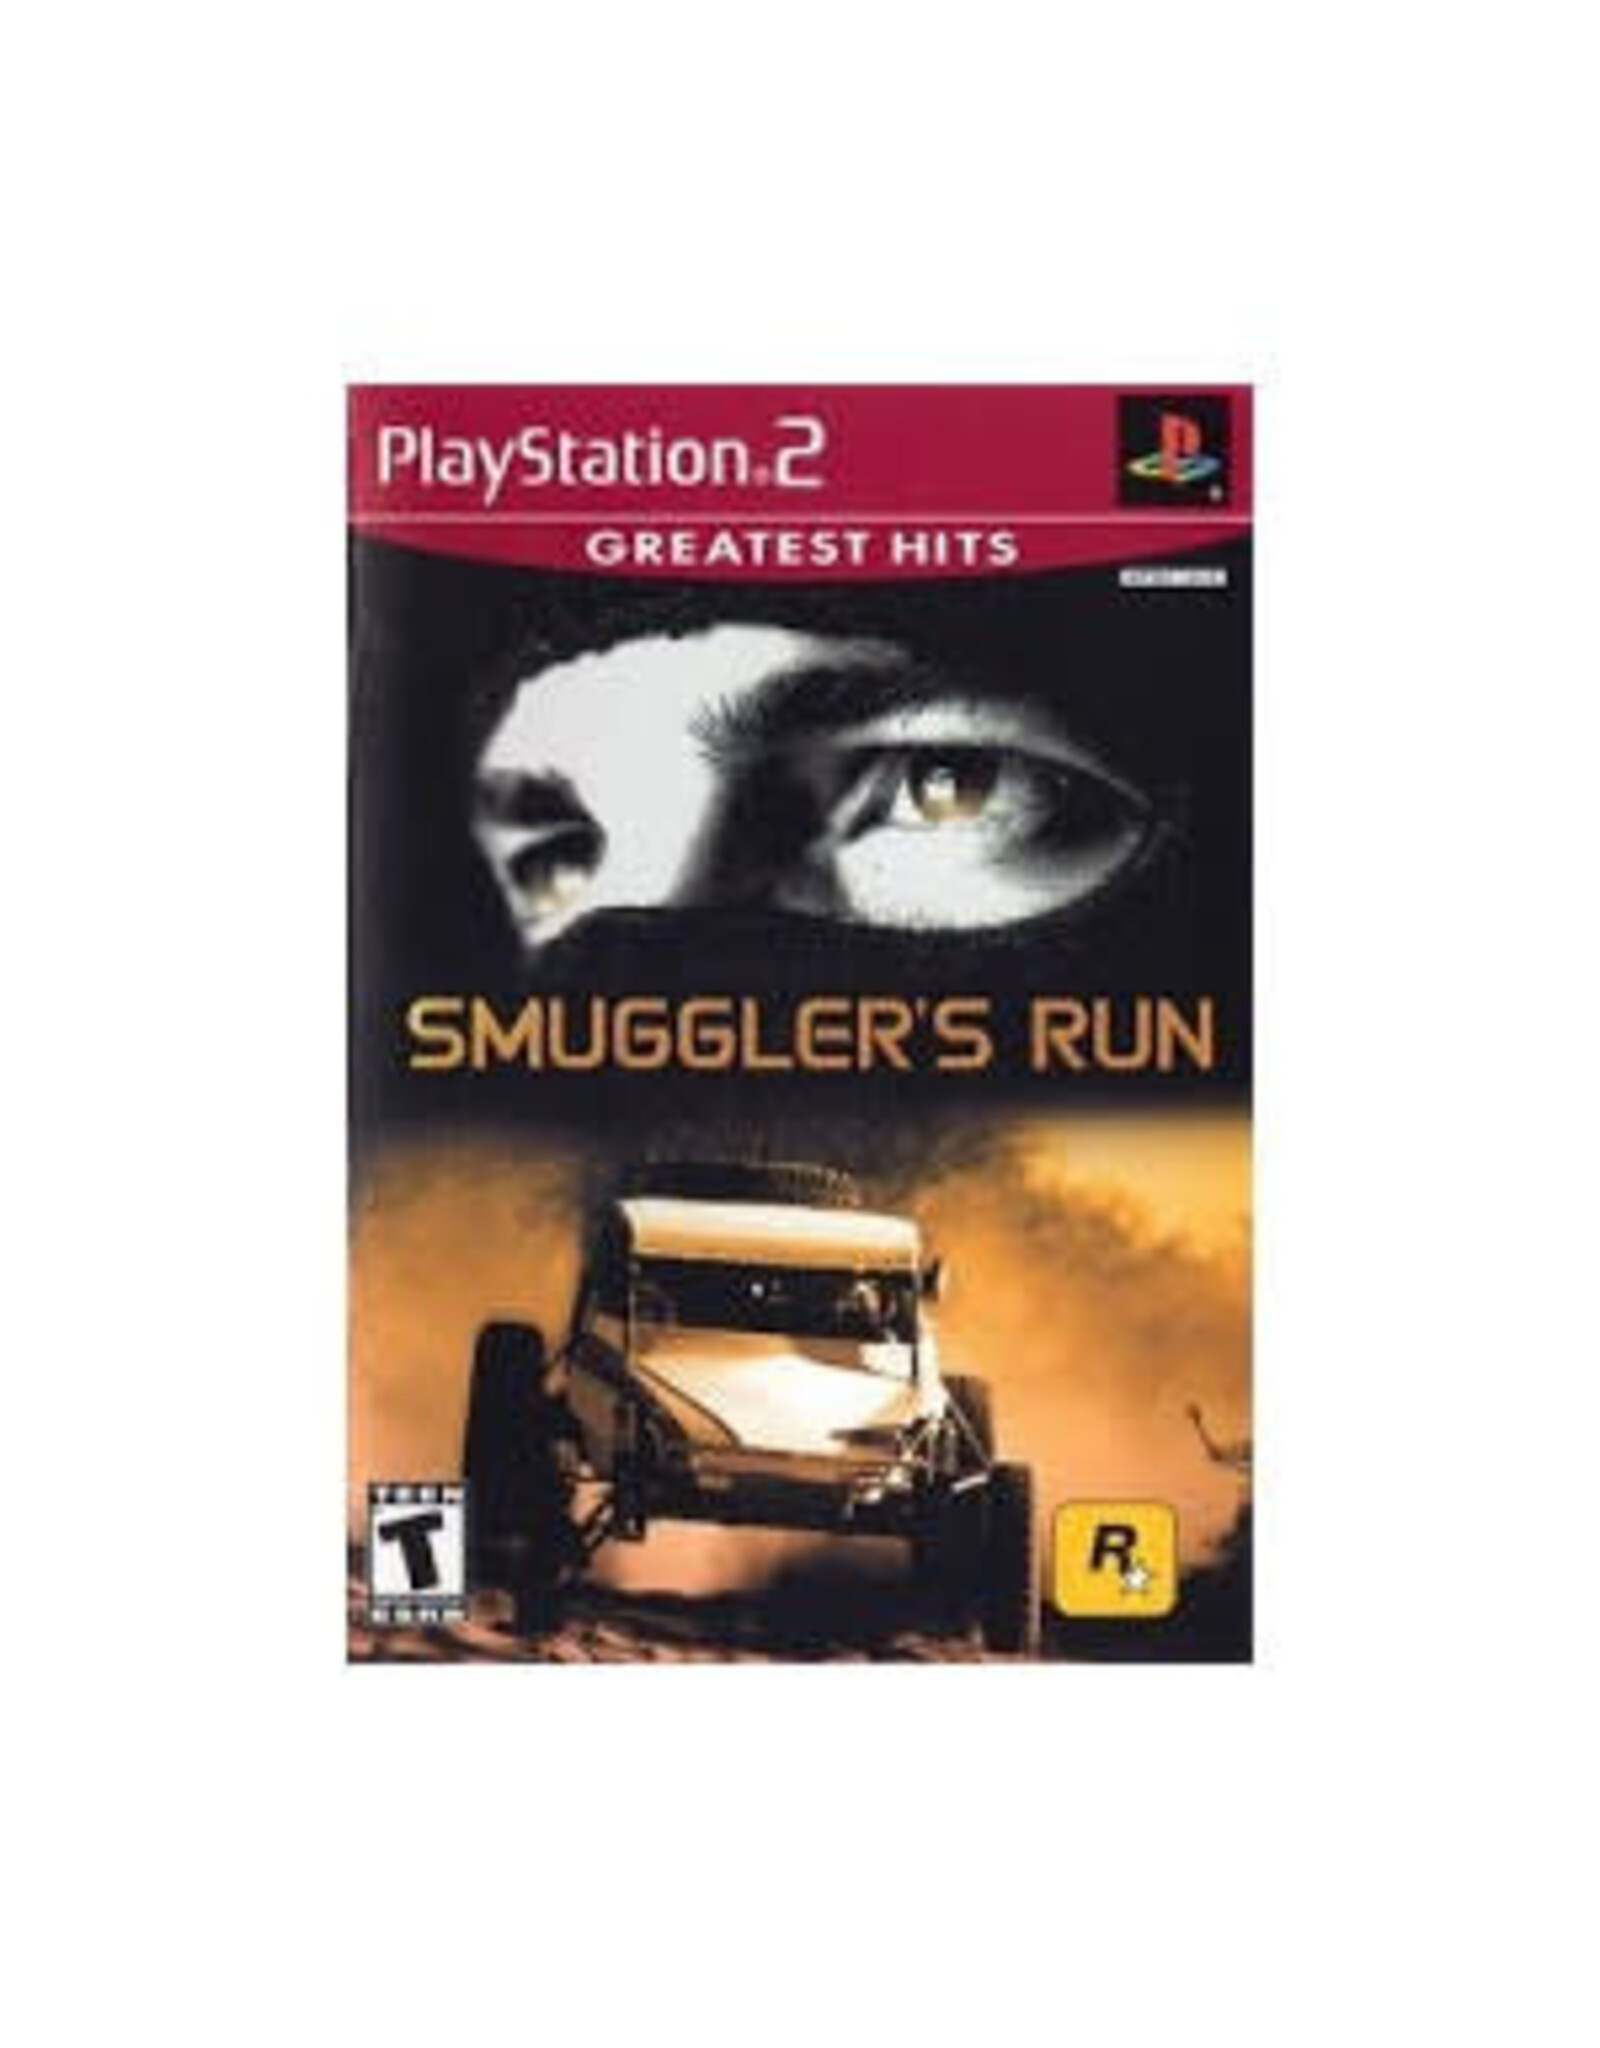 Playstation 2 Smuggler's Run (Greatest Hits, CiB)